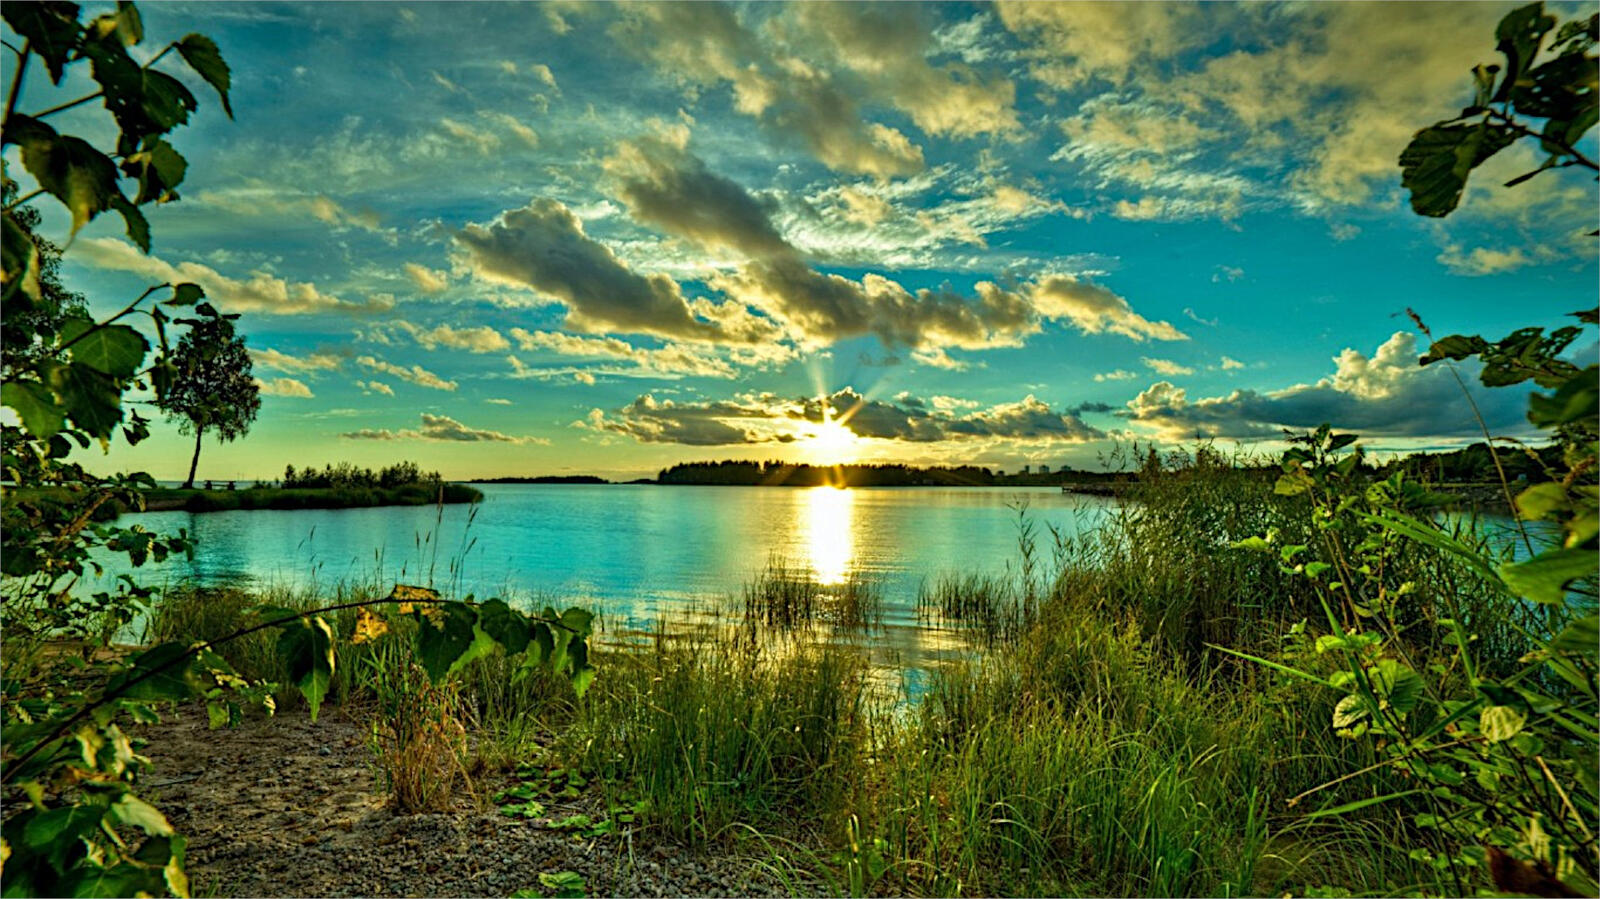 免费照片晴朗天气下的蓝色夏季湖泊